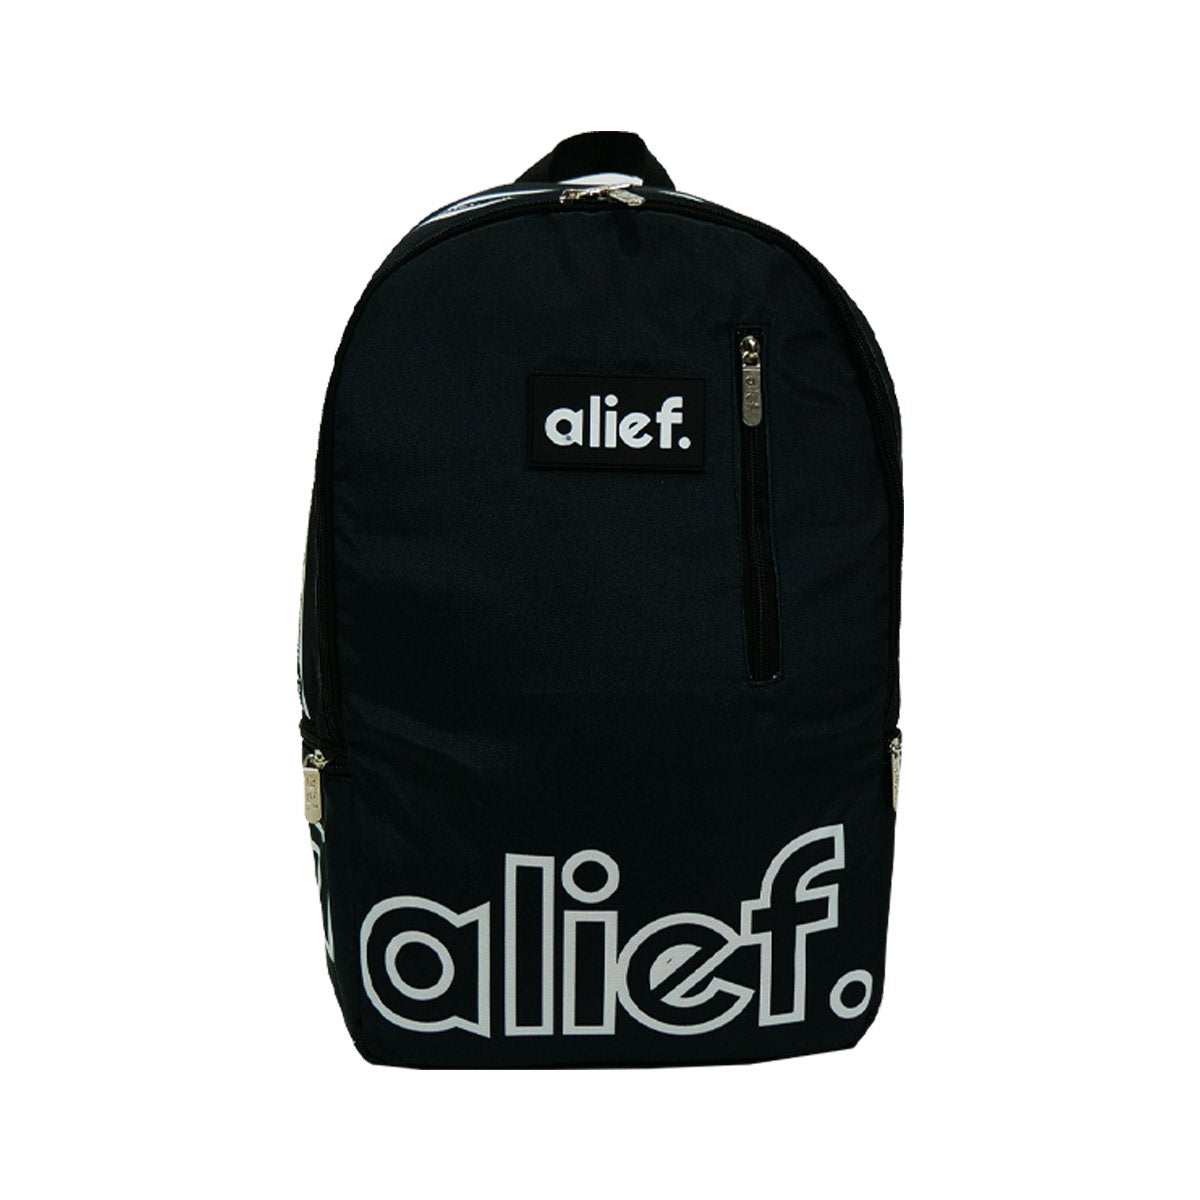 Alief Backpack - Black